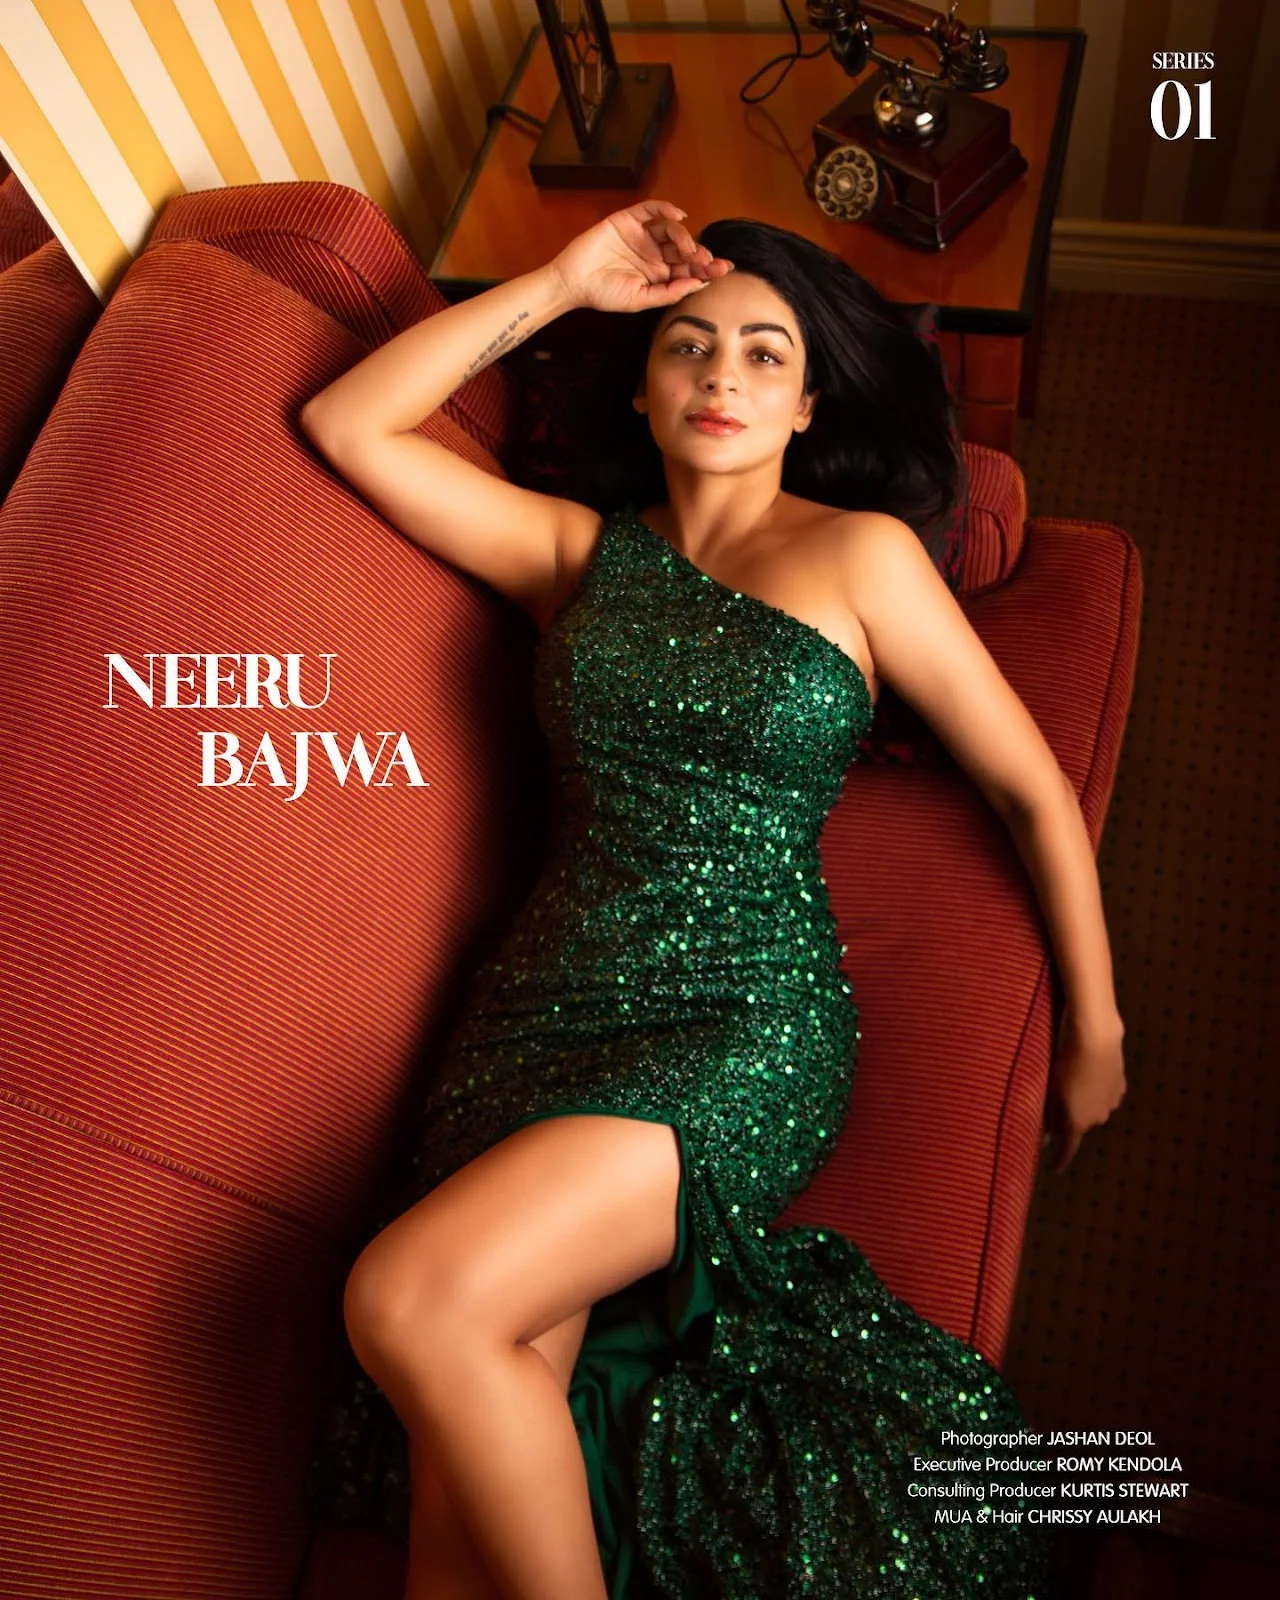 neeru bajwa curvy legs green dress hot punjabi actress